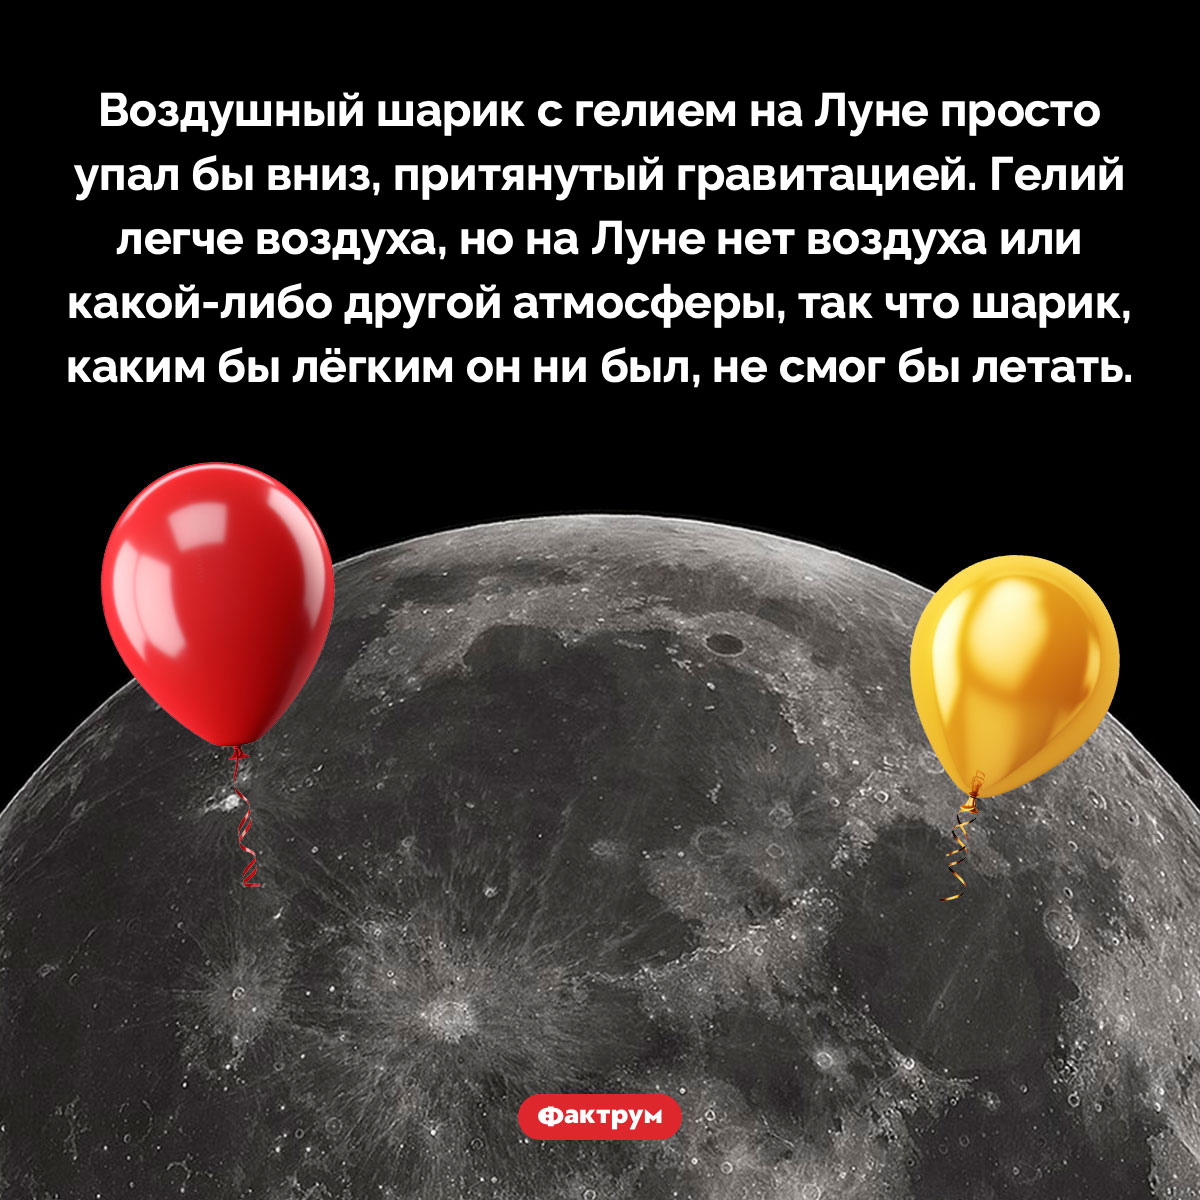 Мог бы воздушный шарик, наполненный гелием, летать на Луне?